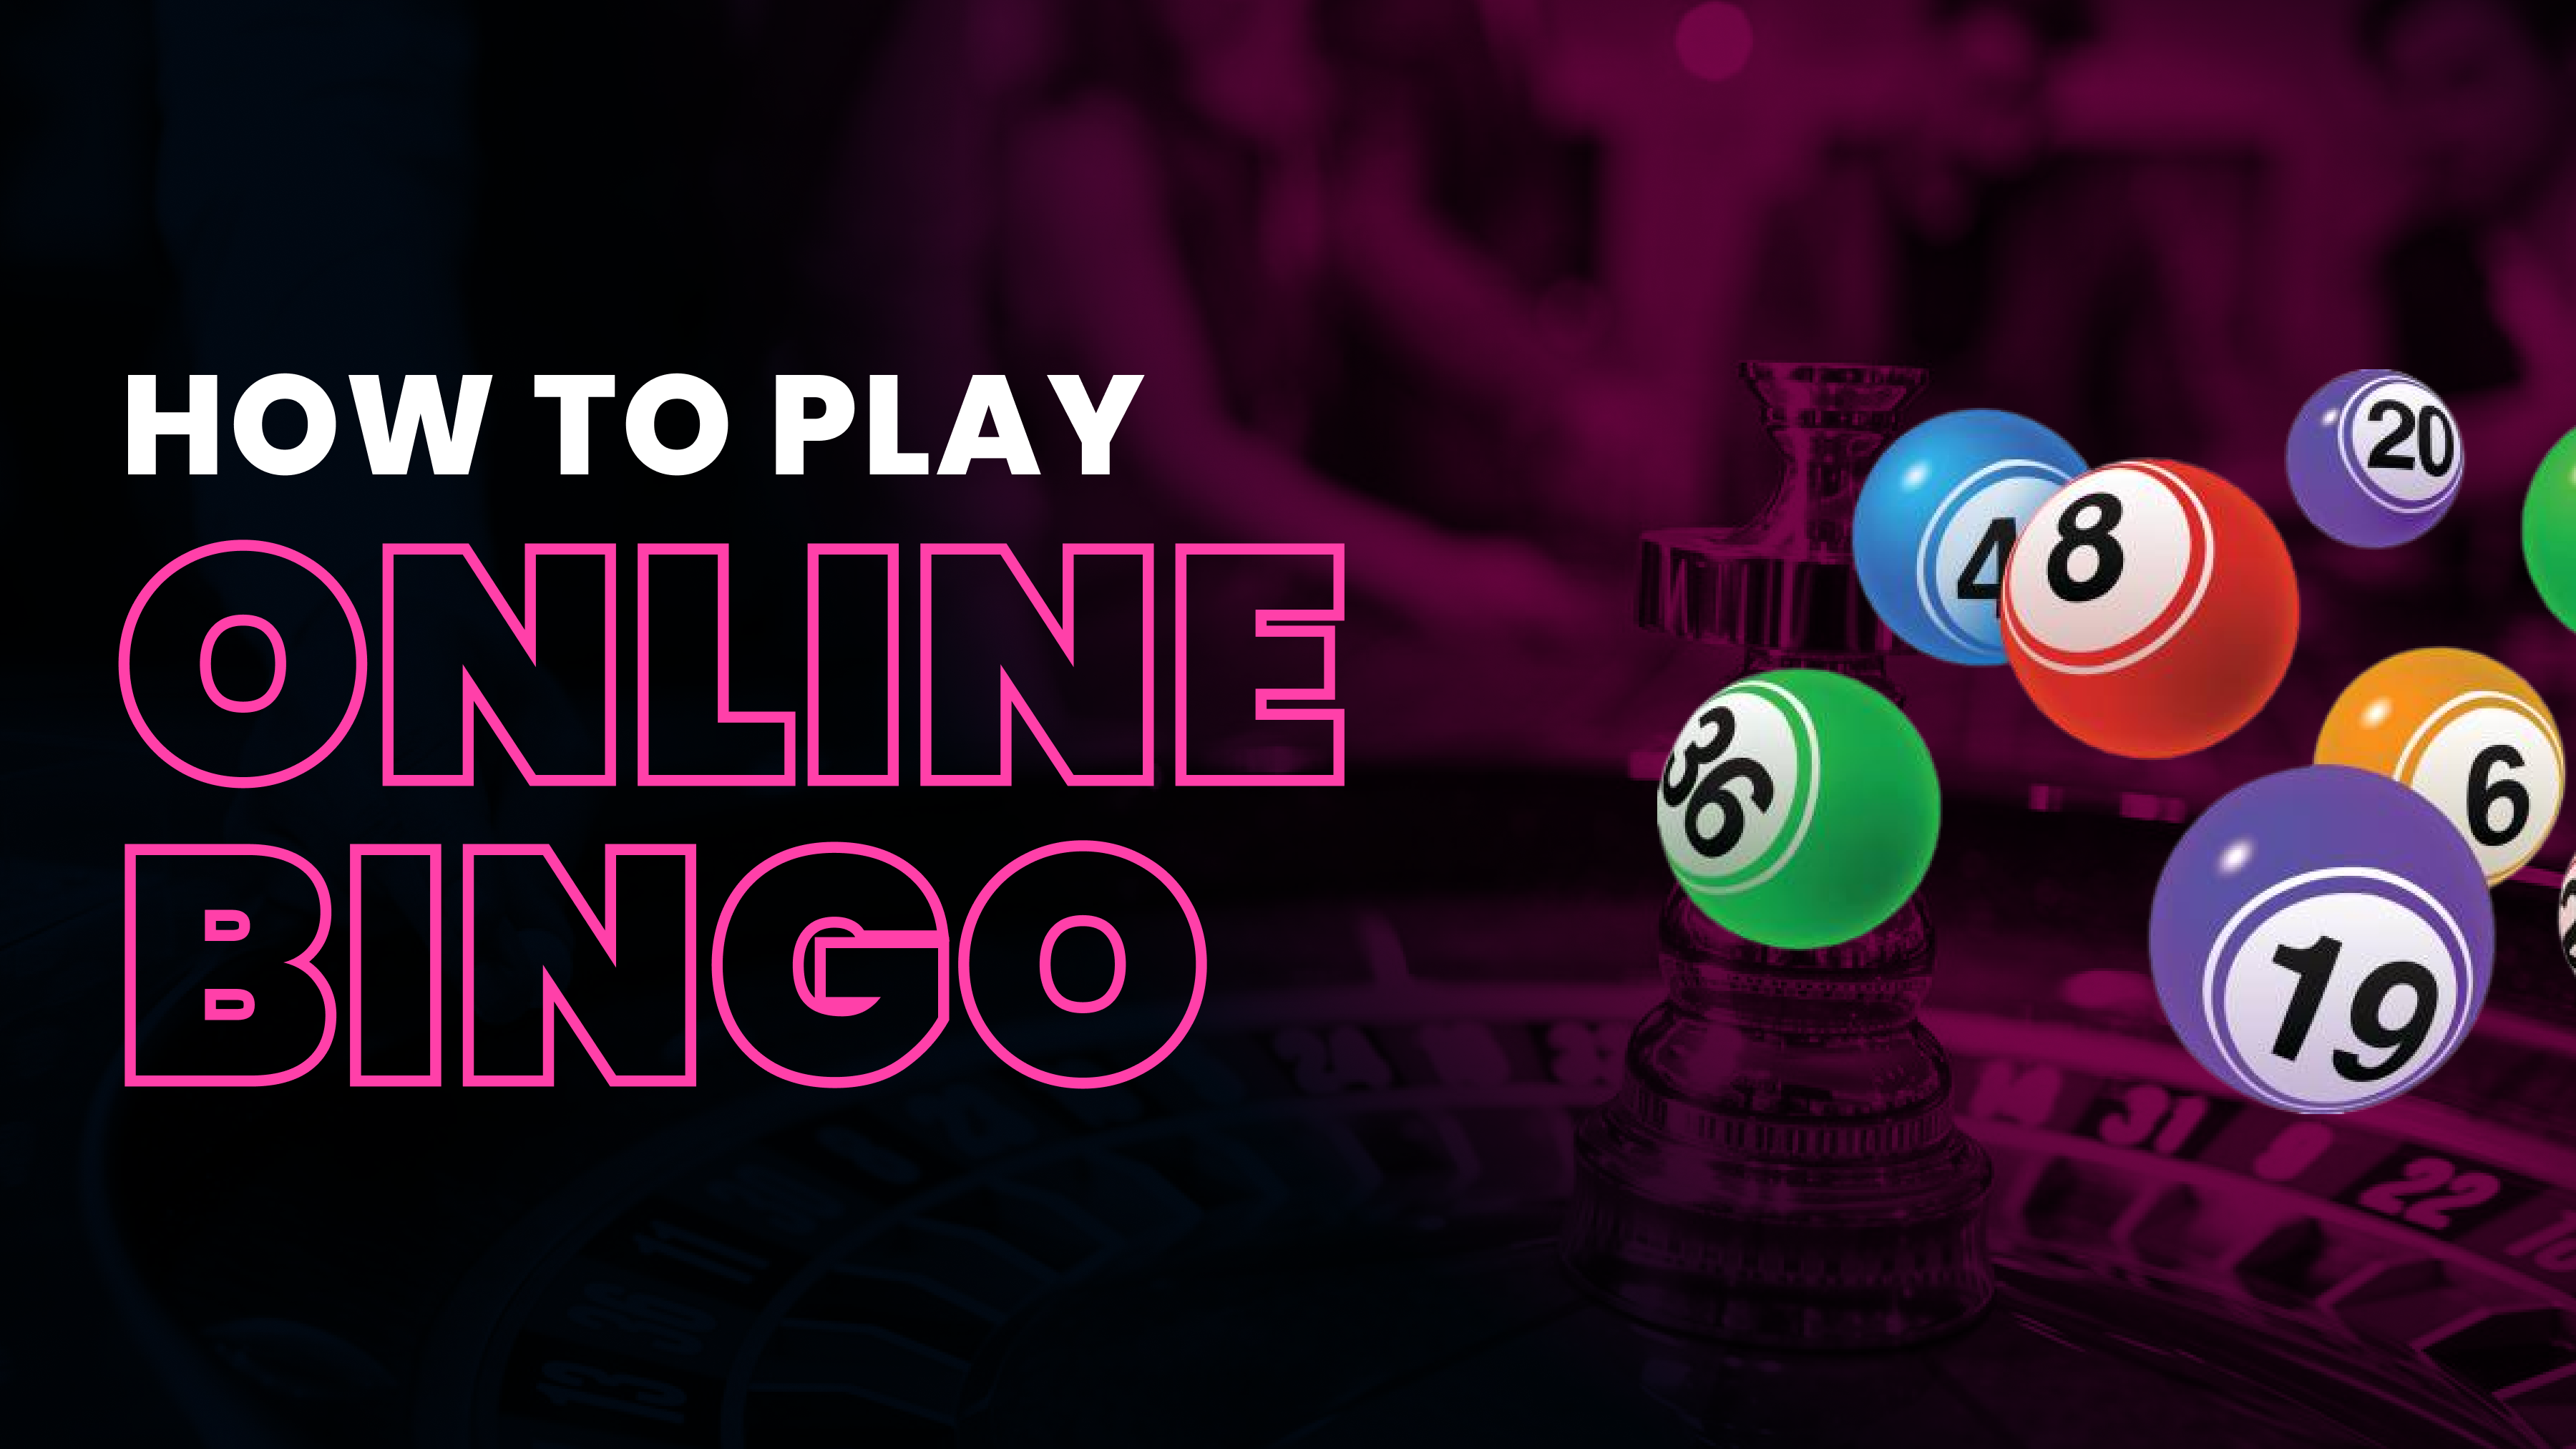 How to Play Bingo Online Header Image